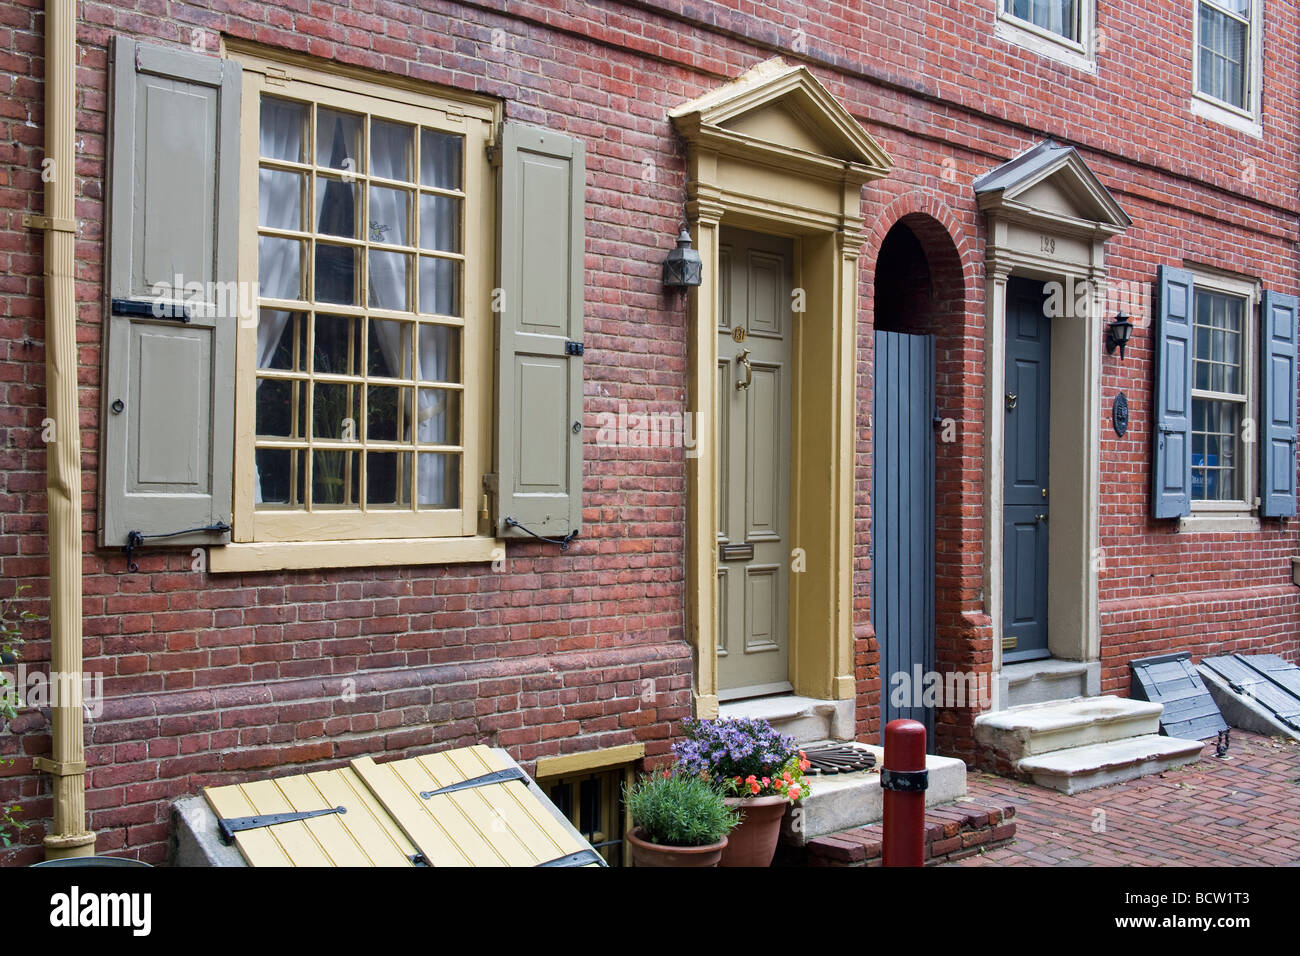 Case a schiera in una vecchia città, Elfreth's Alley, Philadelphia, Pennsylvania, STATI UNITI D'AMERICA Foto Stock